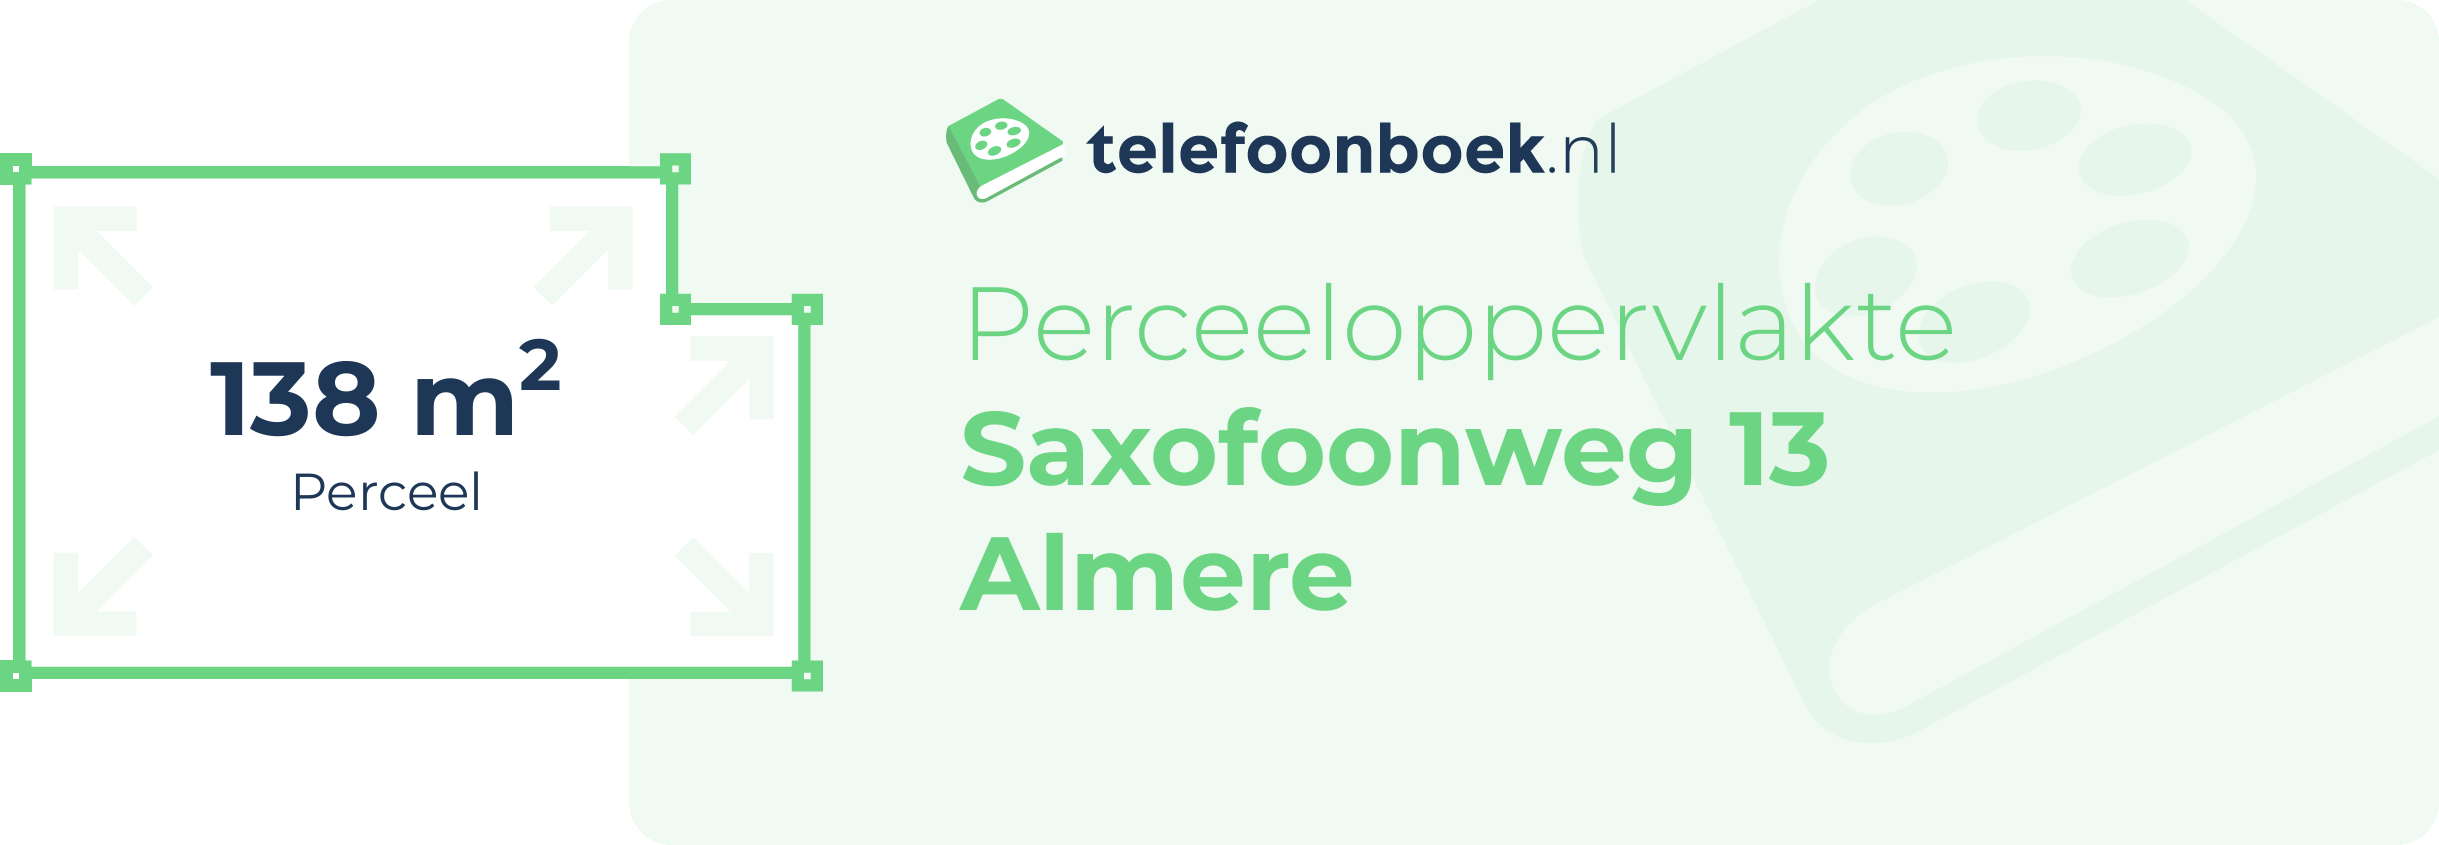 Perceeloppervlakte Saxofoonweg 13 Almere